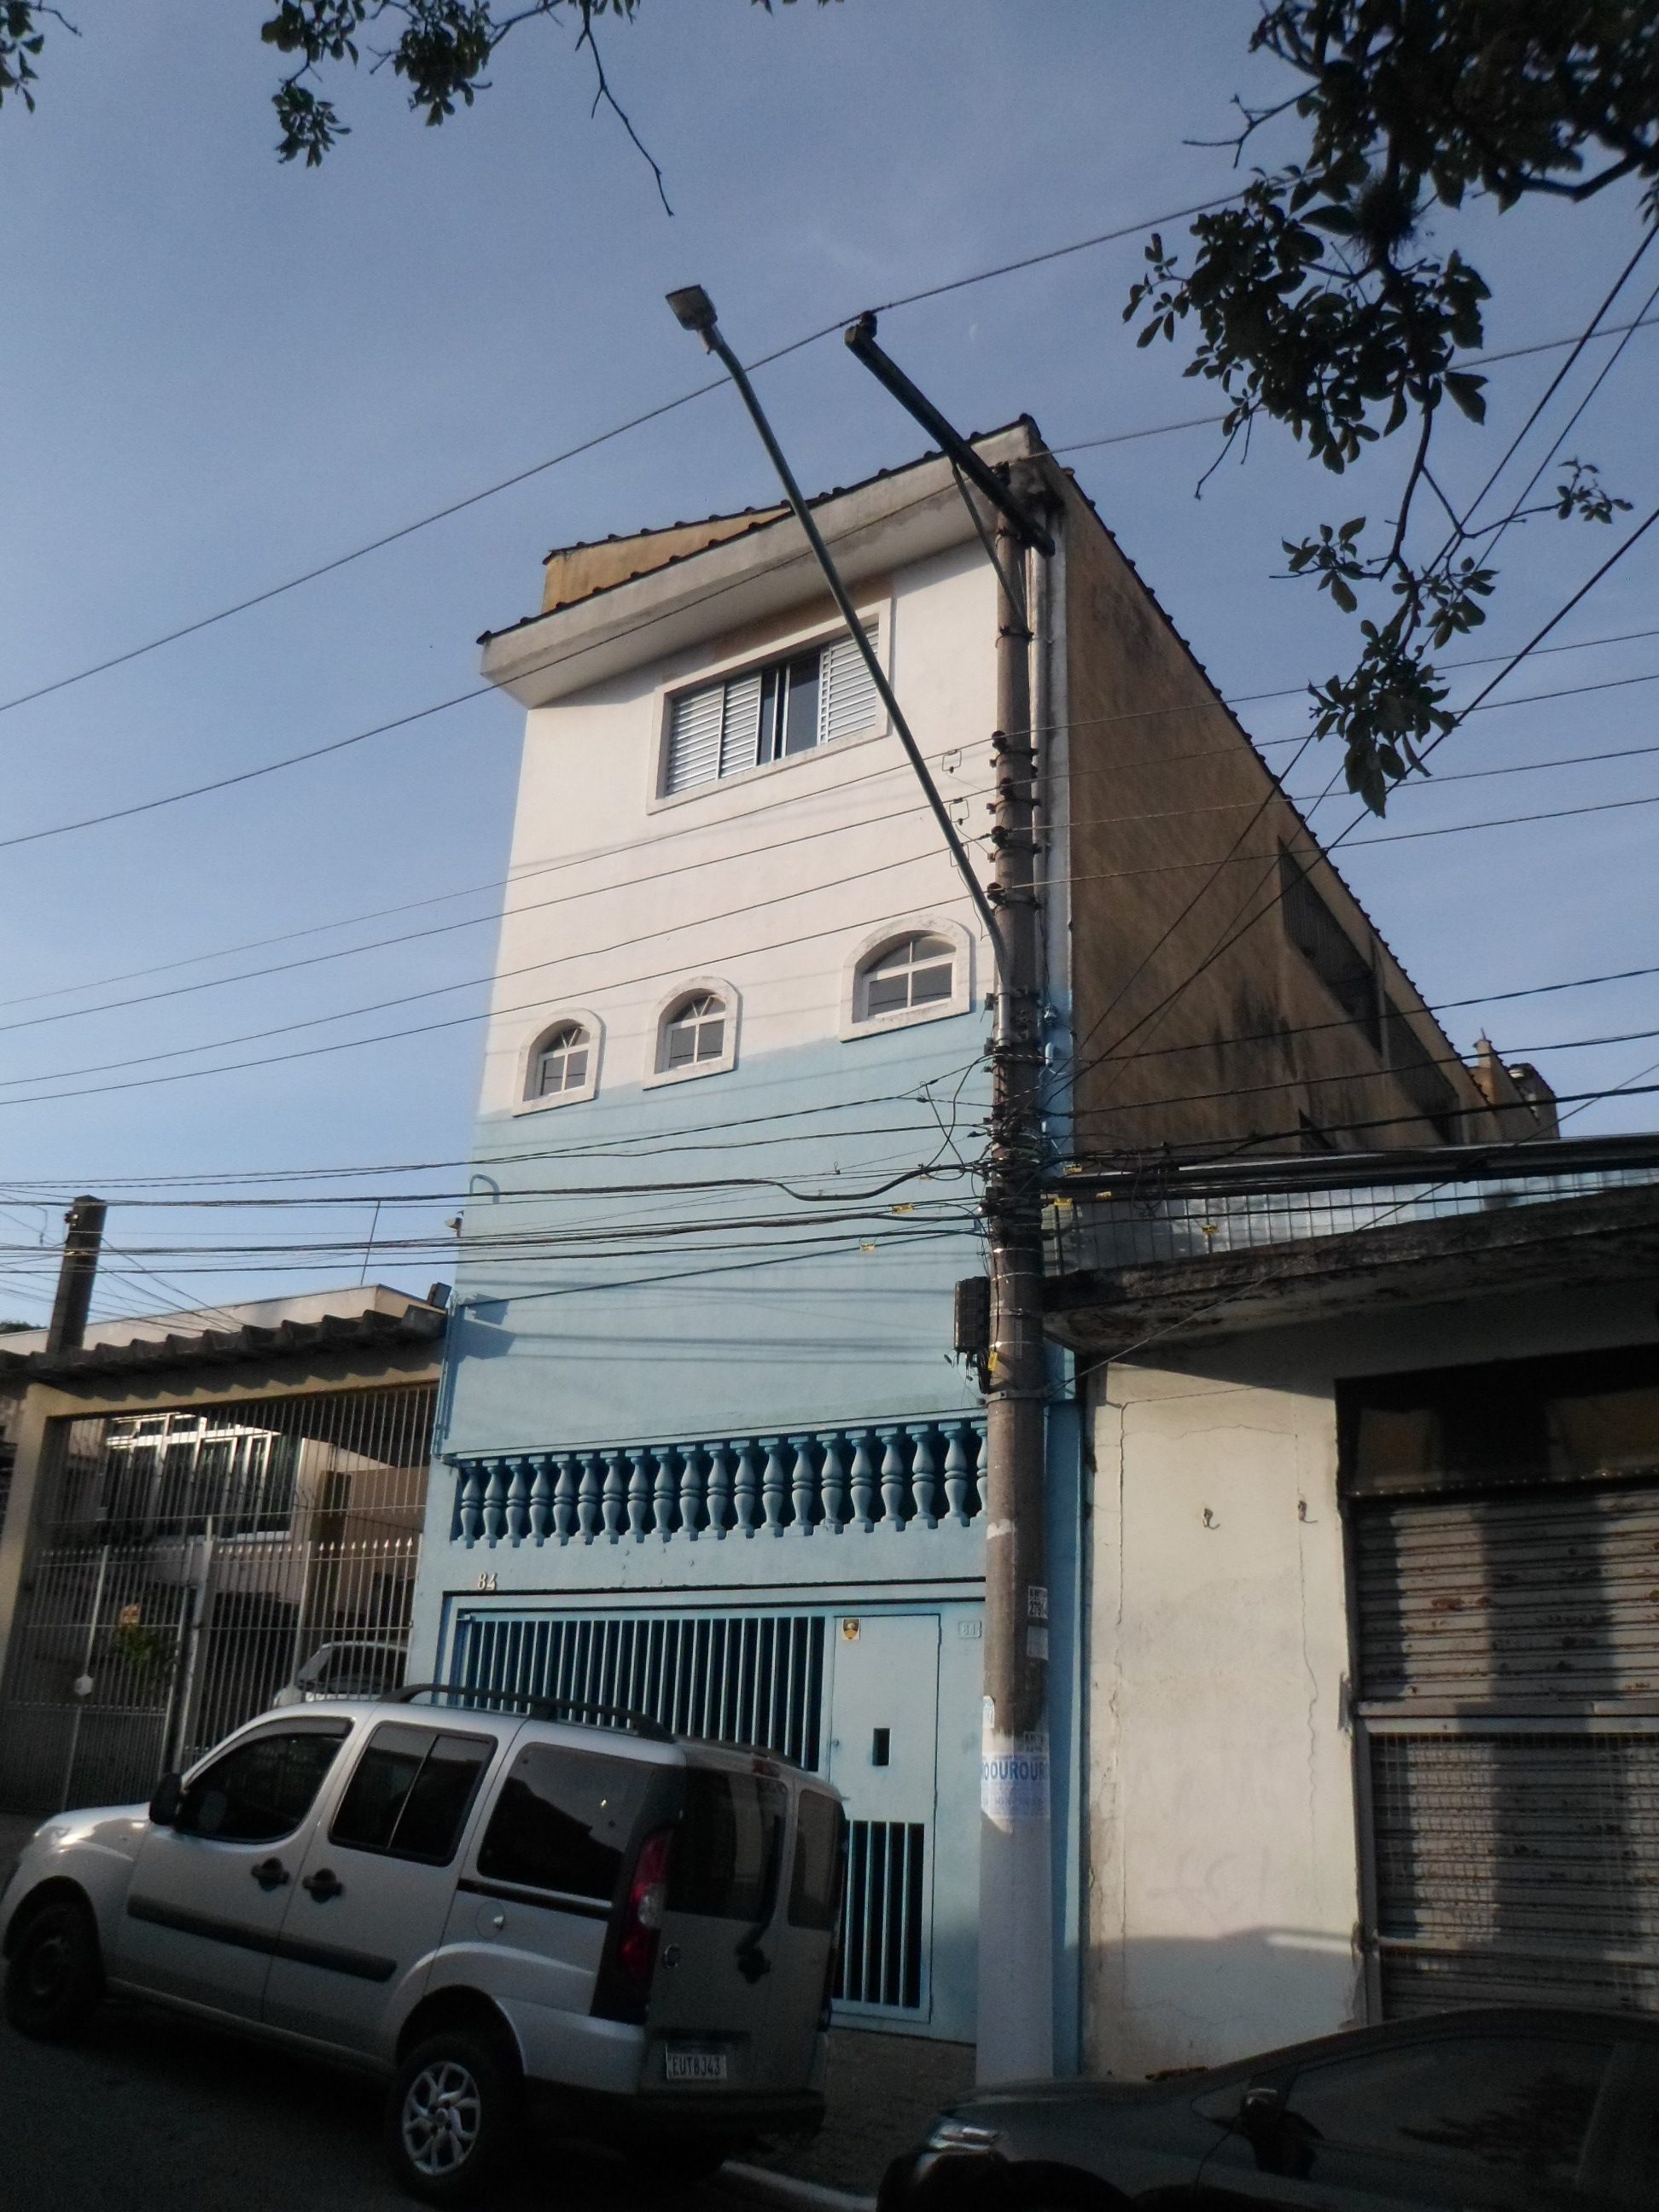 Cód. 0216 – Rua Gonçalves Figueira 84 – Residencial ou Comercial